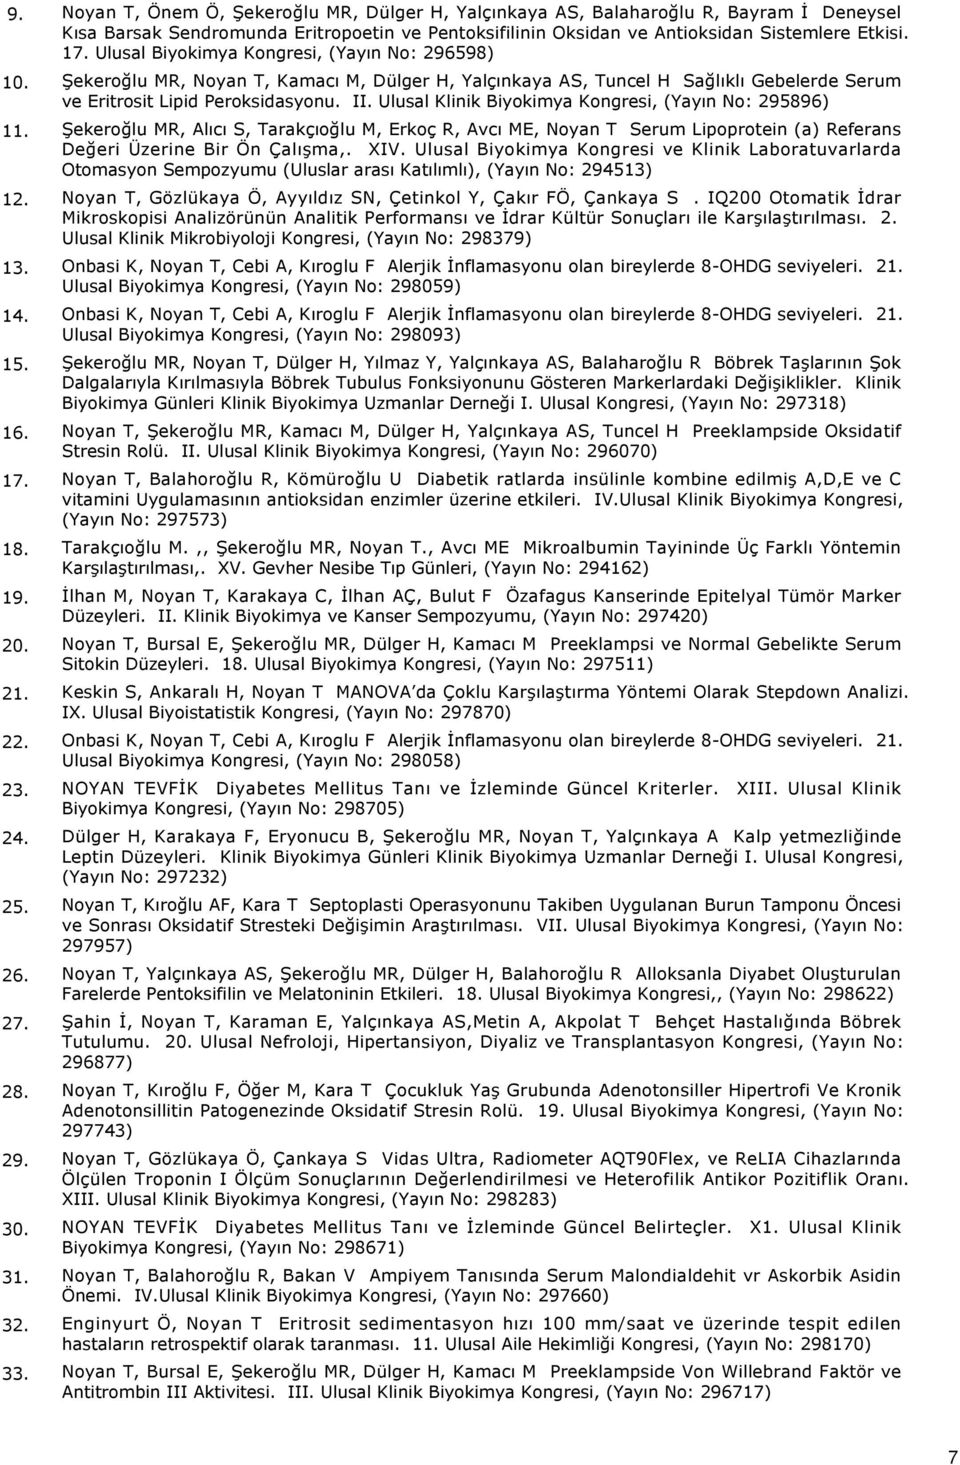 Ulusal Biyokimya Kongresi, (Yayın No: 296598) Şekeroğlu MR, Noyan T, Kamacı M, Dülger H, Yalçınkaya AS, Tuncel H Sağlıklı Gebelerde Serum ve Eritrosit Lipid Peroksidasyonu. II.